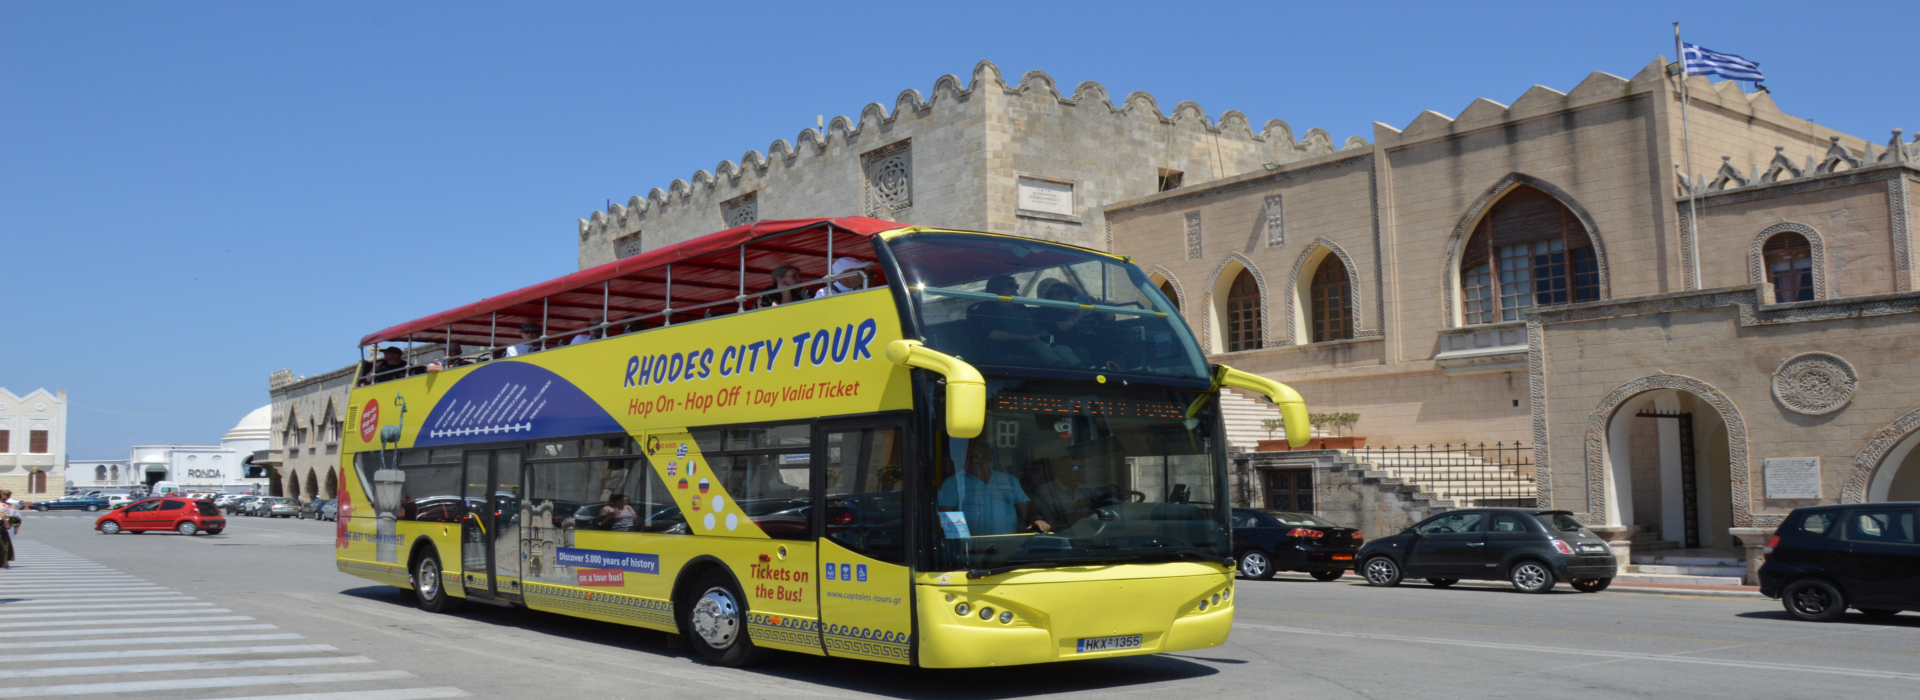 Rhodes City Tour with Open Bus | Captains Tours